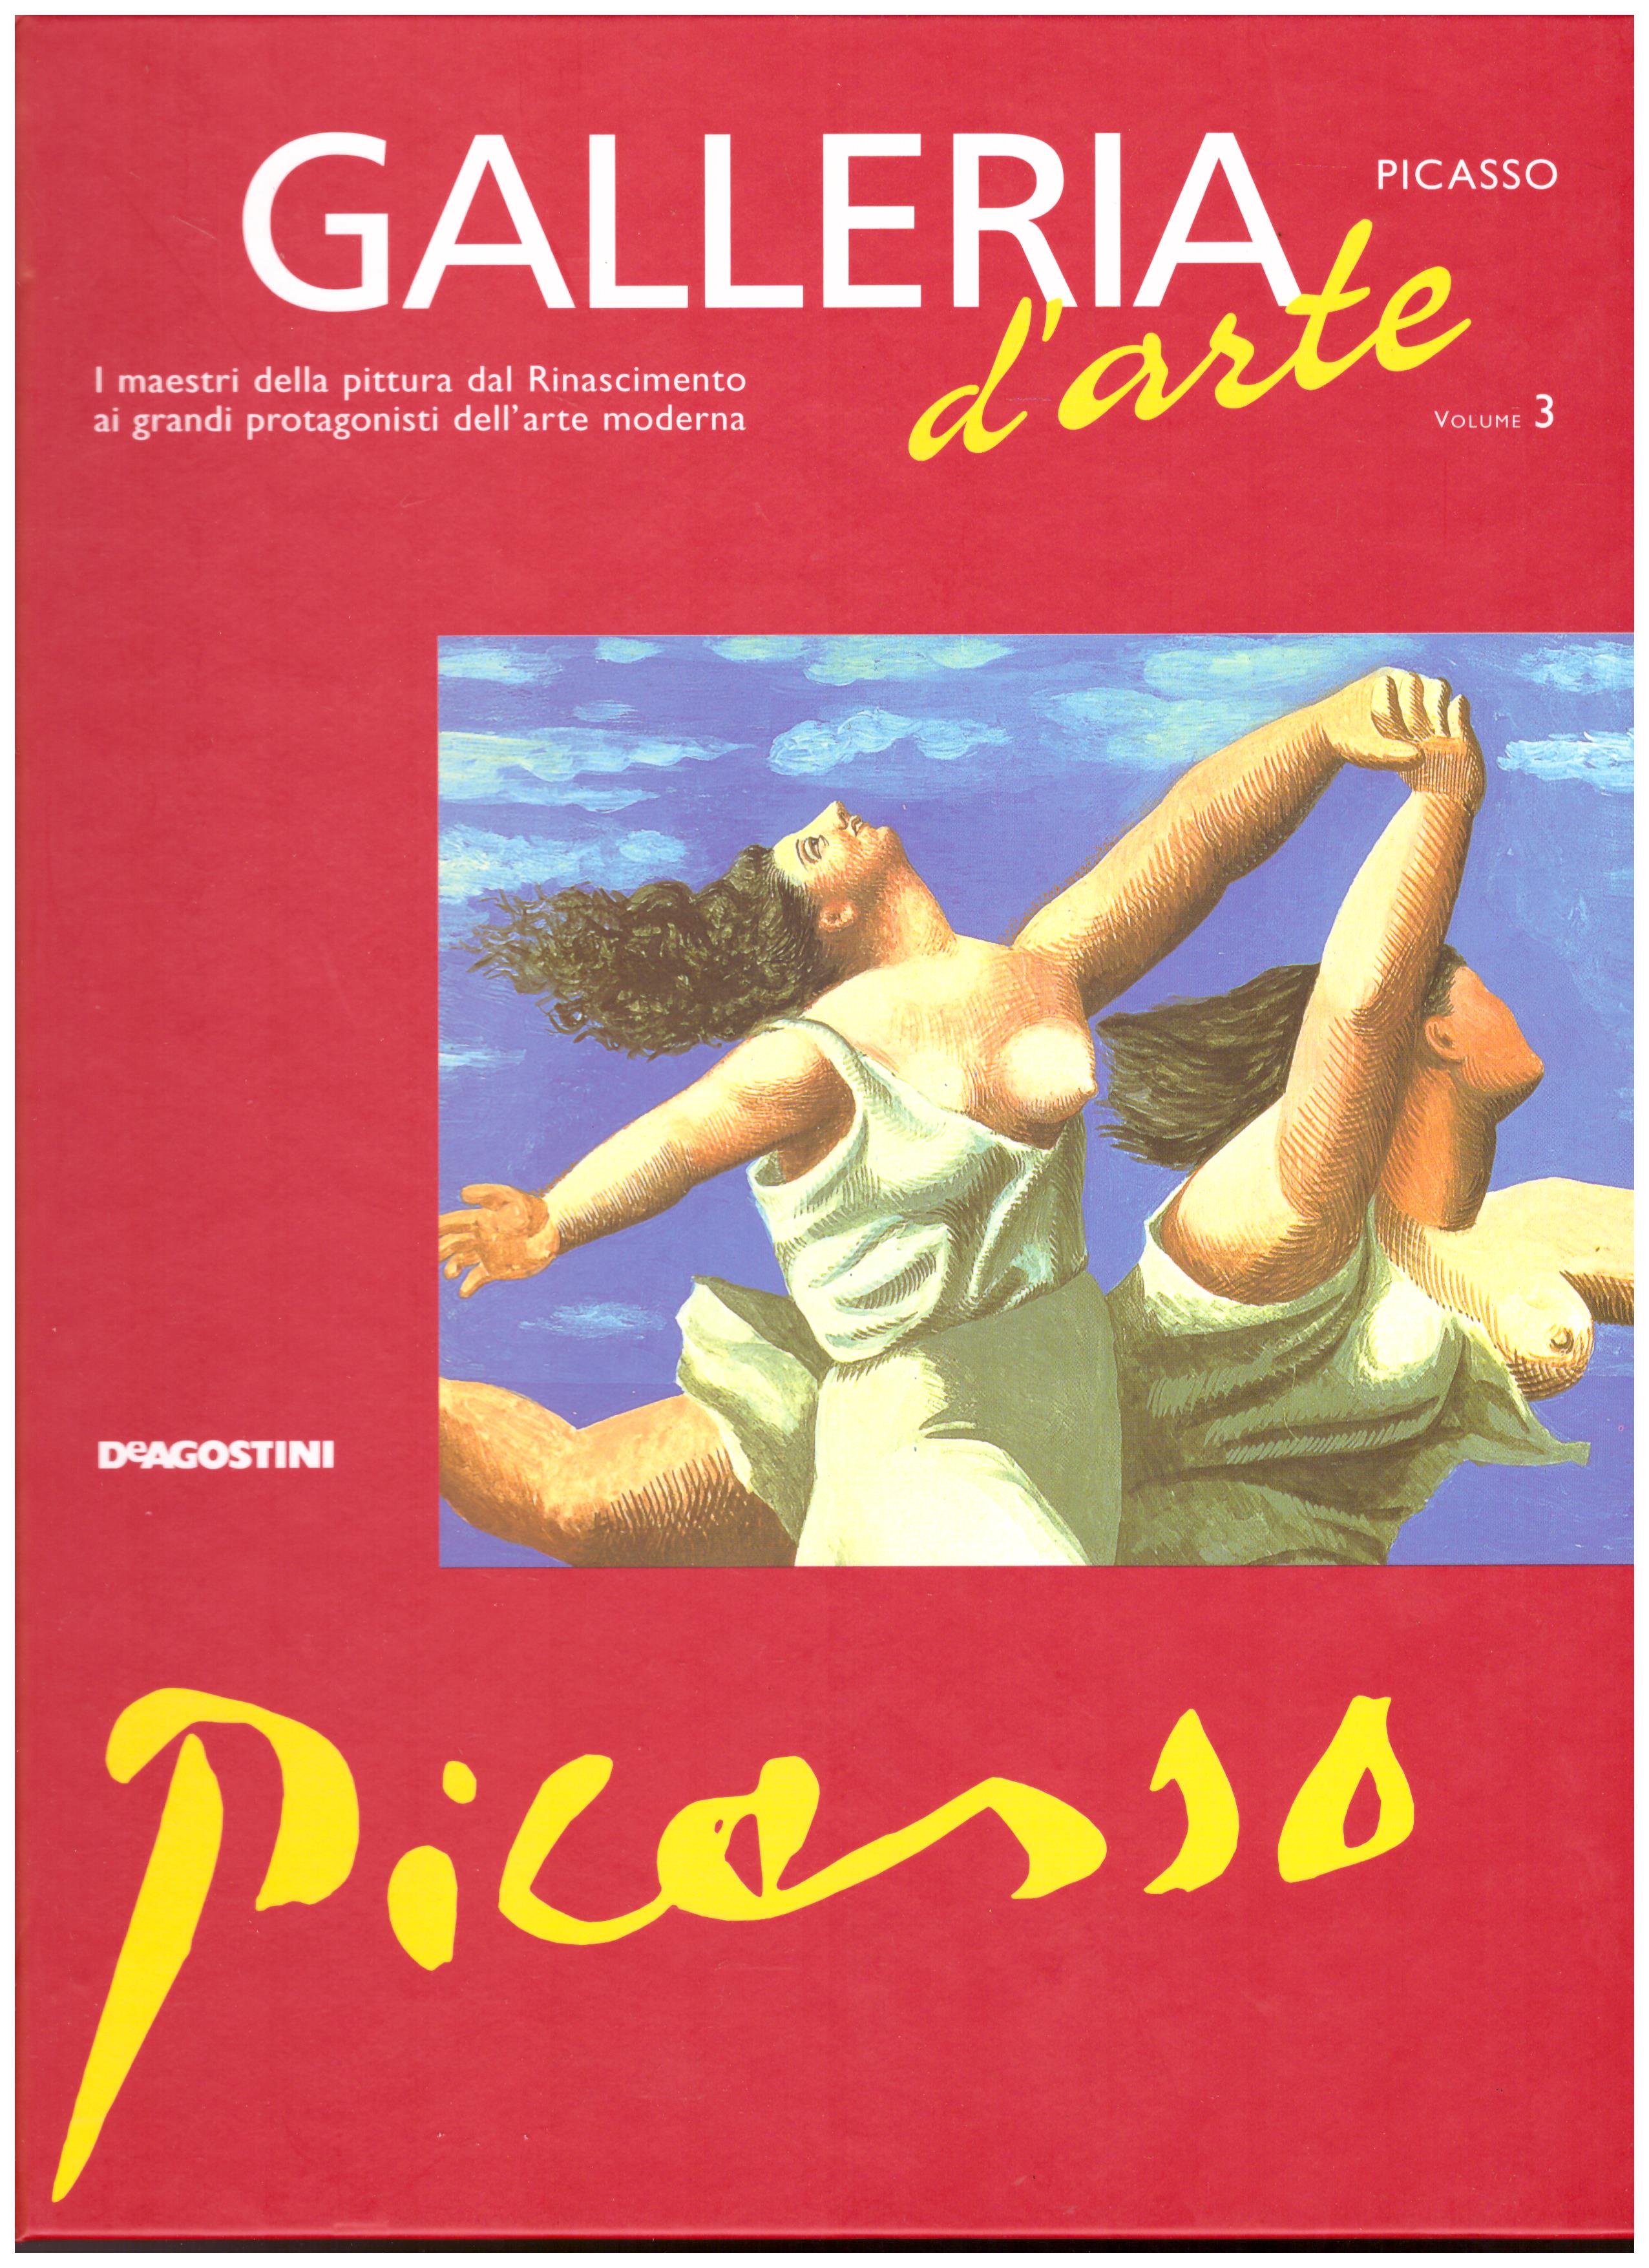 Titolo: Galleria d'arte, Picasso Autore: AA.VV.  Editore: DeAgostini, 2001